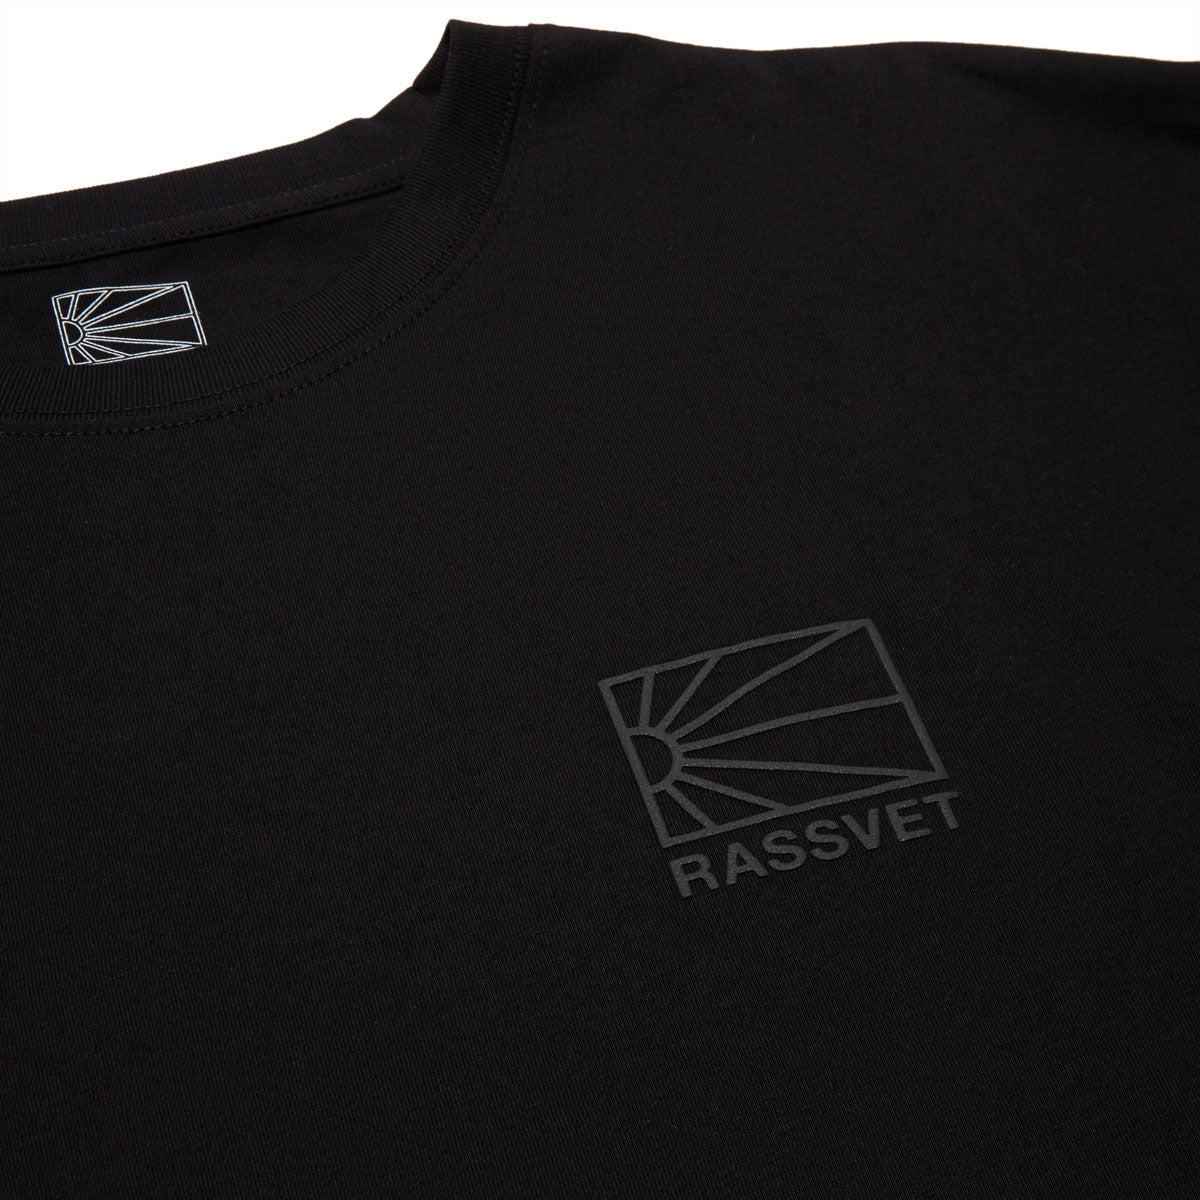 Rassvet Mini Logo T-Shirt - Black image 2